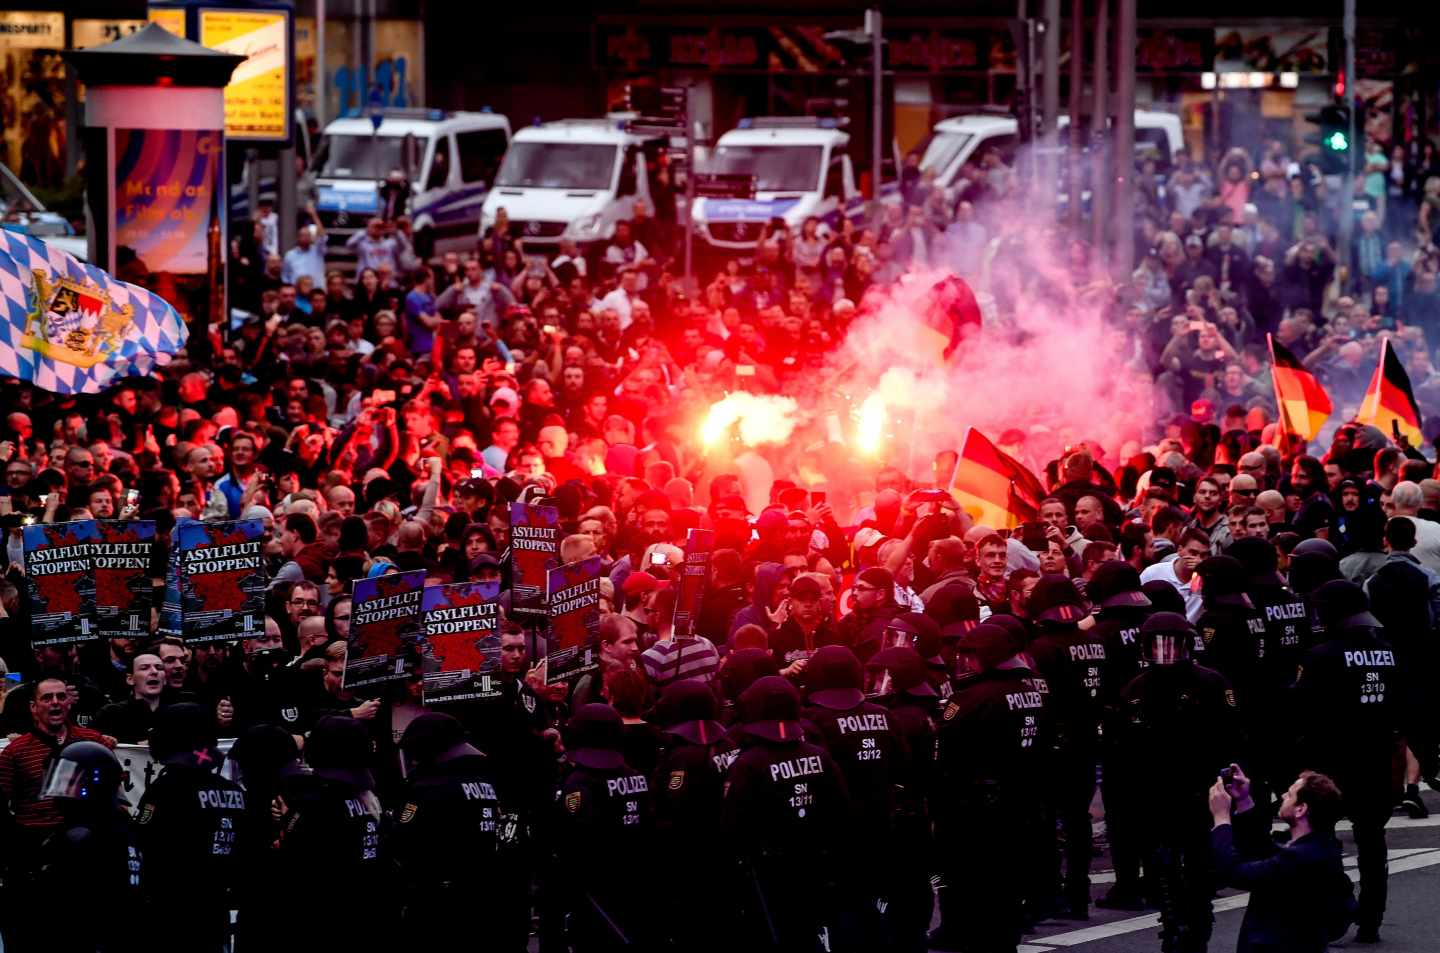 Cerca de 2.000 neonazis toman las calles de la ciudad alemana de Chemnitz tras "la caza del extranjero"